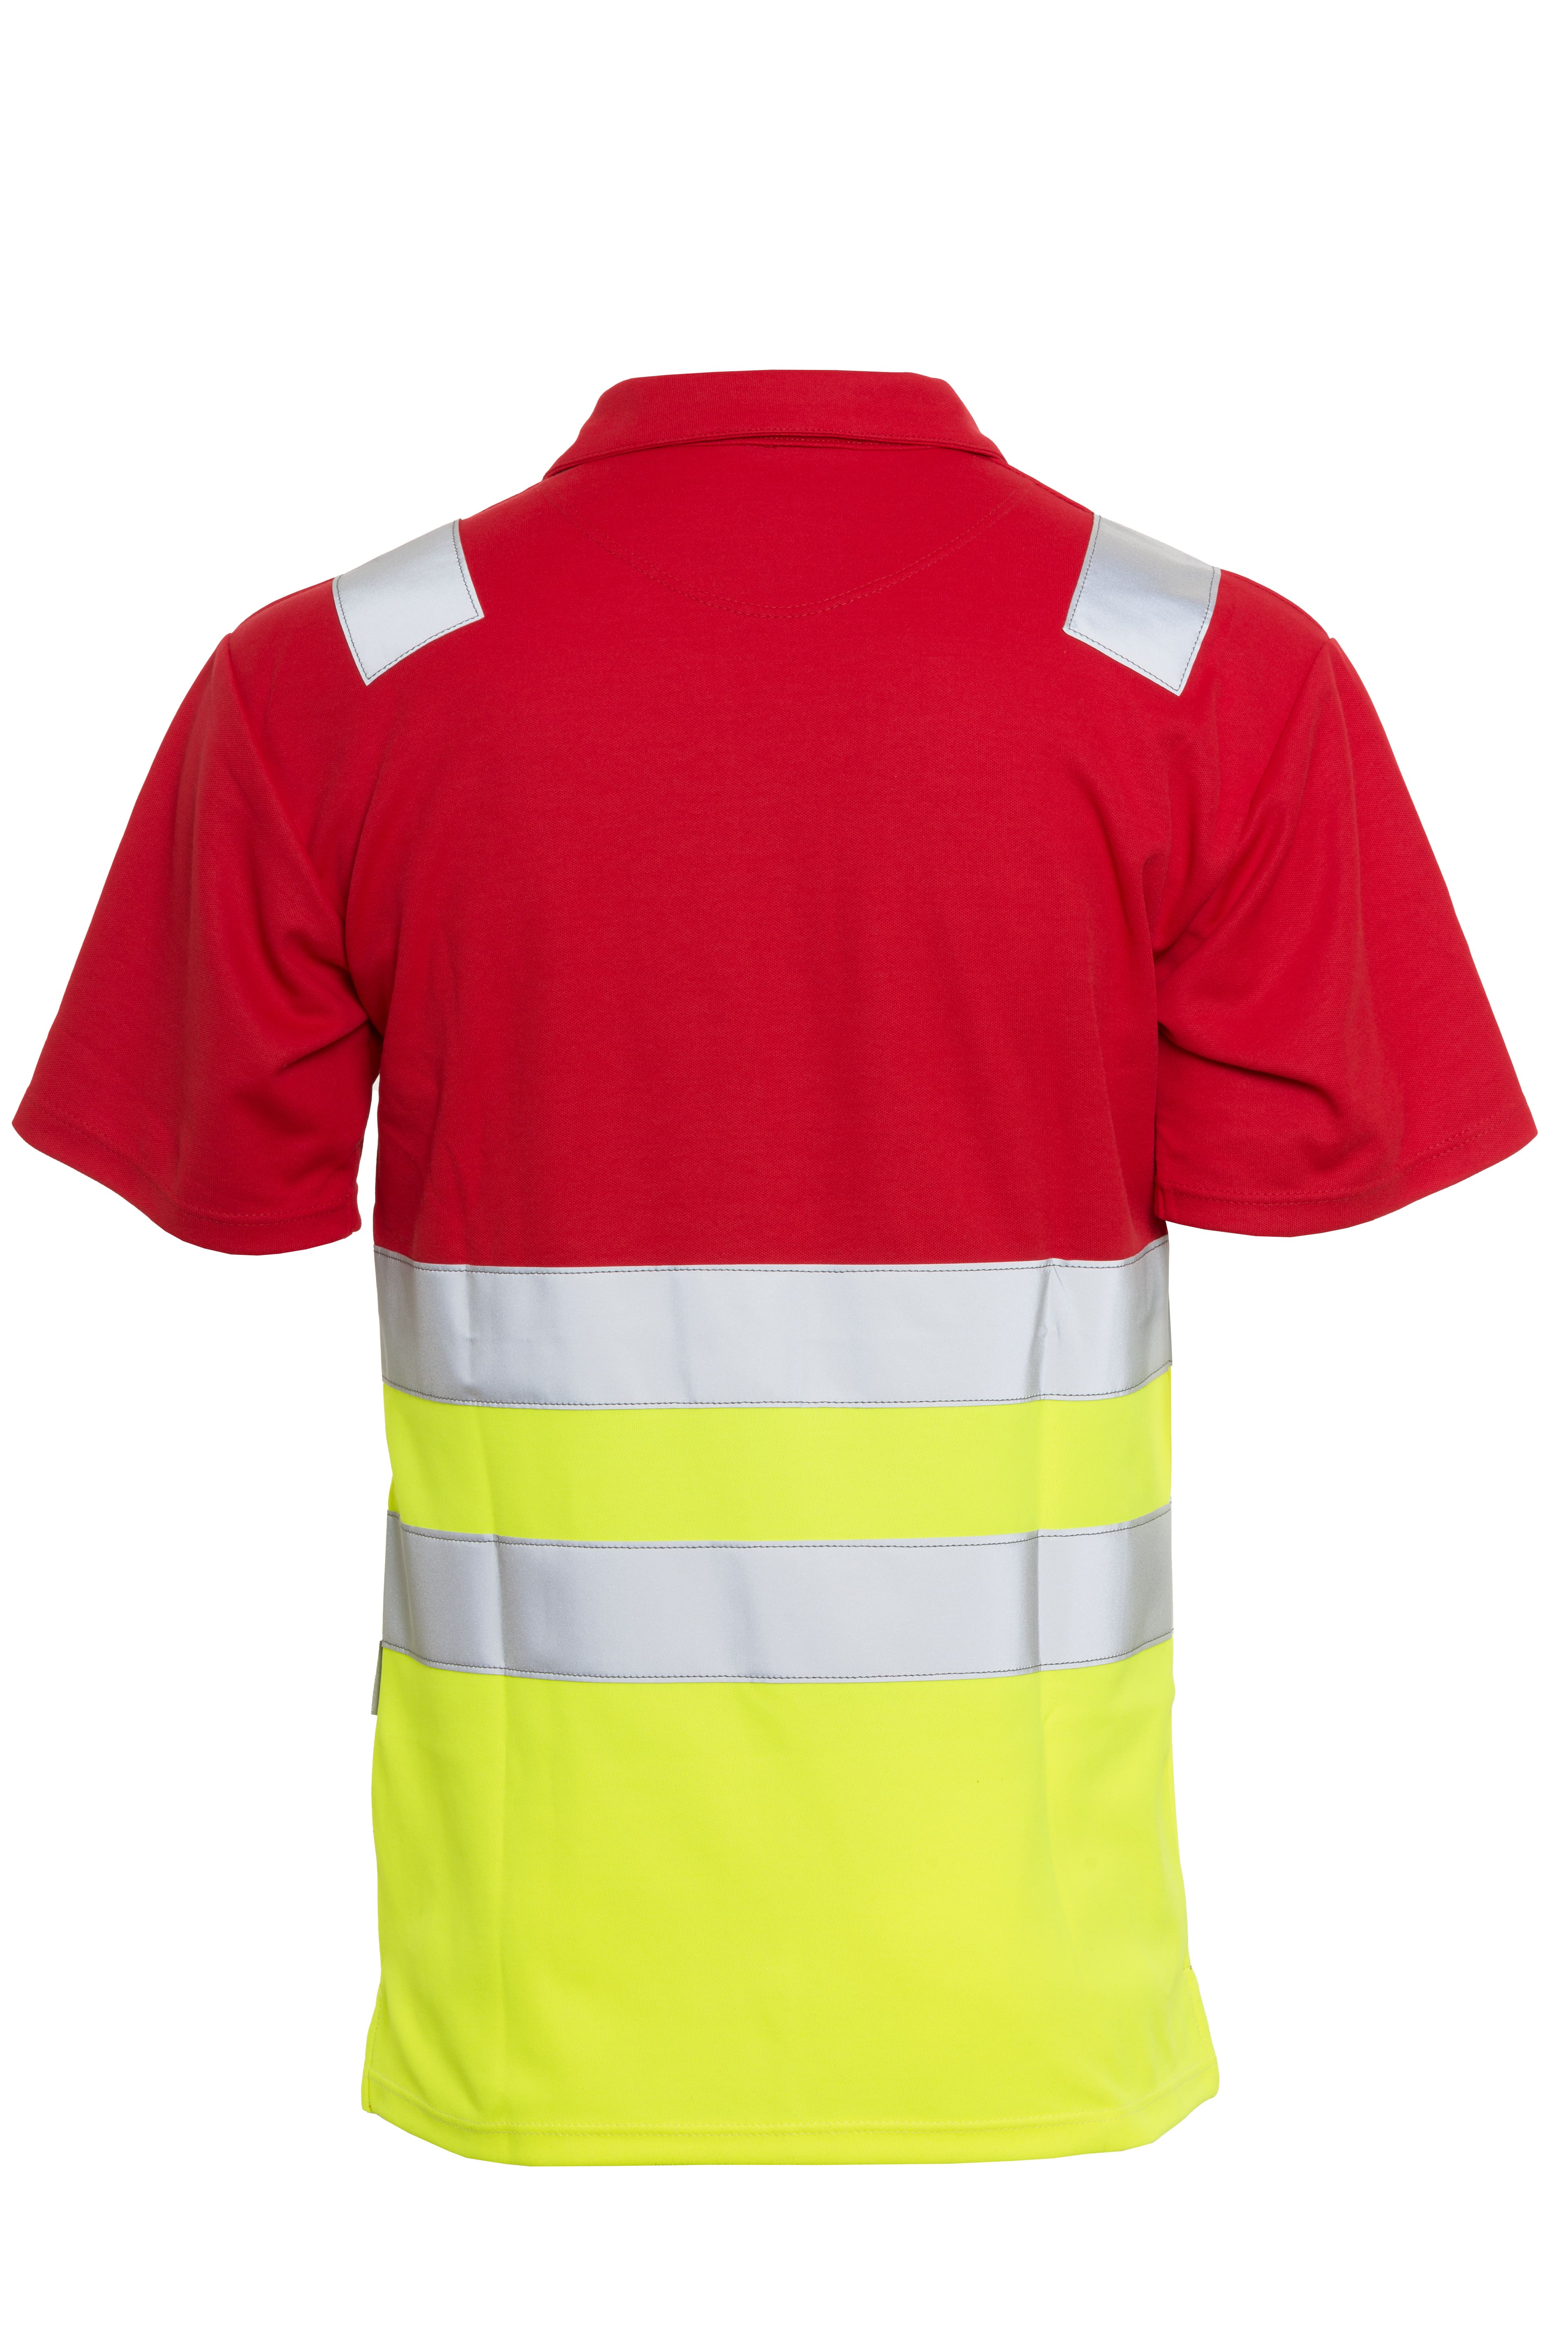 Rescuewear Poloshirt kurze Ärmel HiVis Klasse 1 Neon Gelb / Rot - L